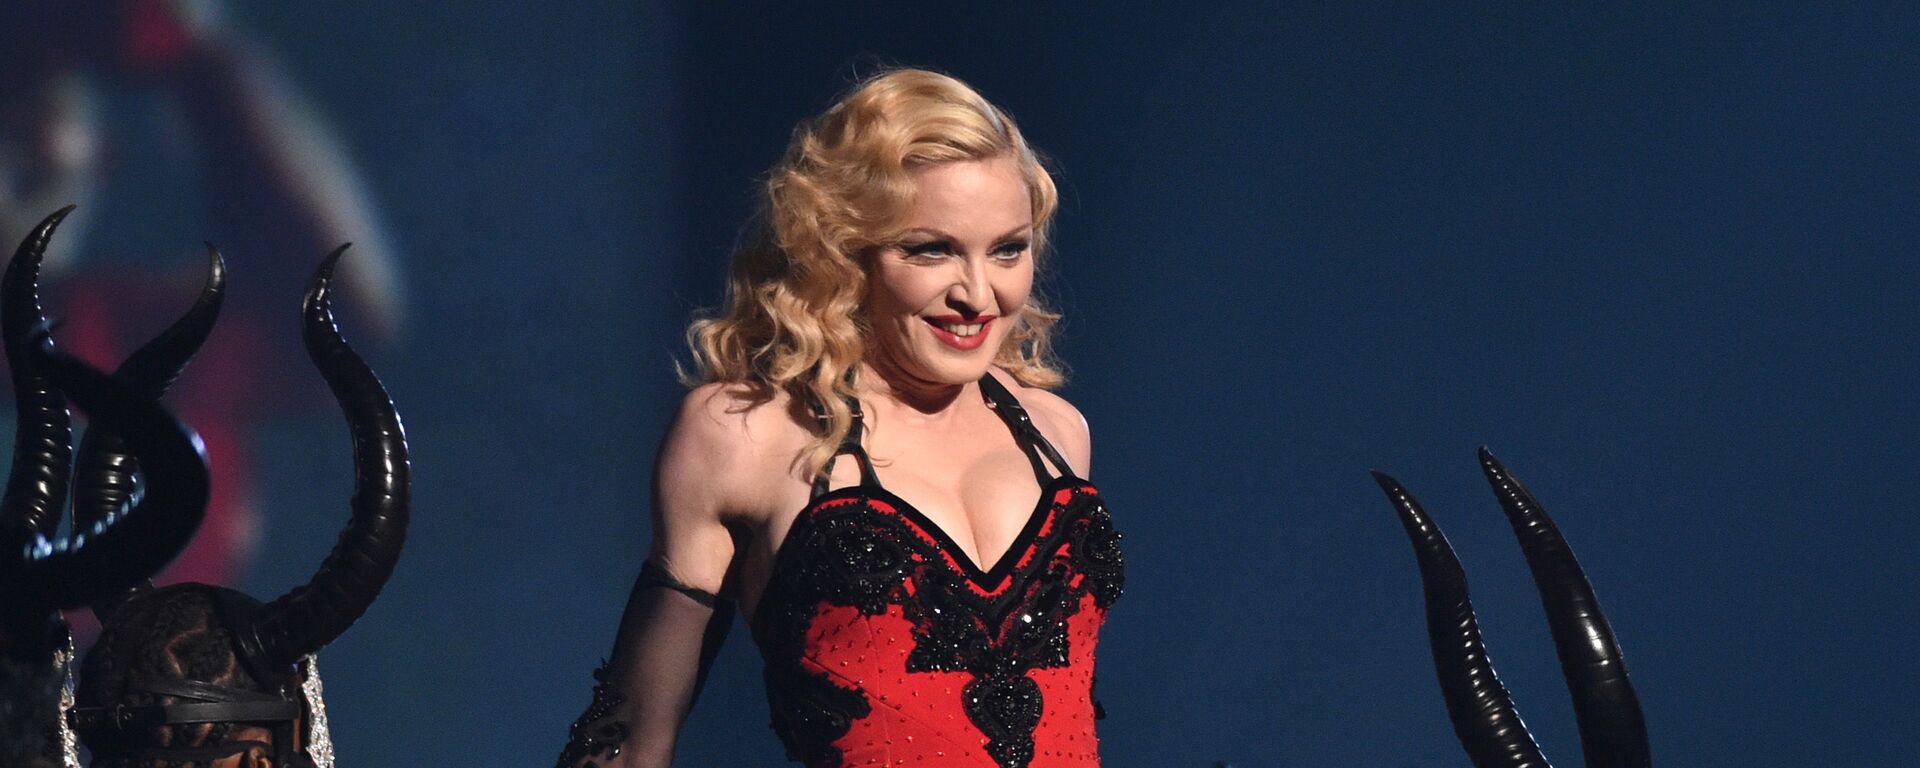 Певица Мадонна выступает на 57-й ежегодной премии Грэмми в Лос-Анджелесе, США, 2015 год - Sputnik Mundo, 1920, 11.01.2023